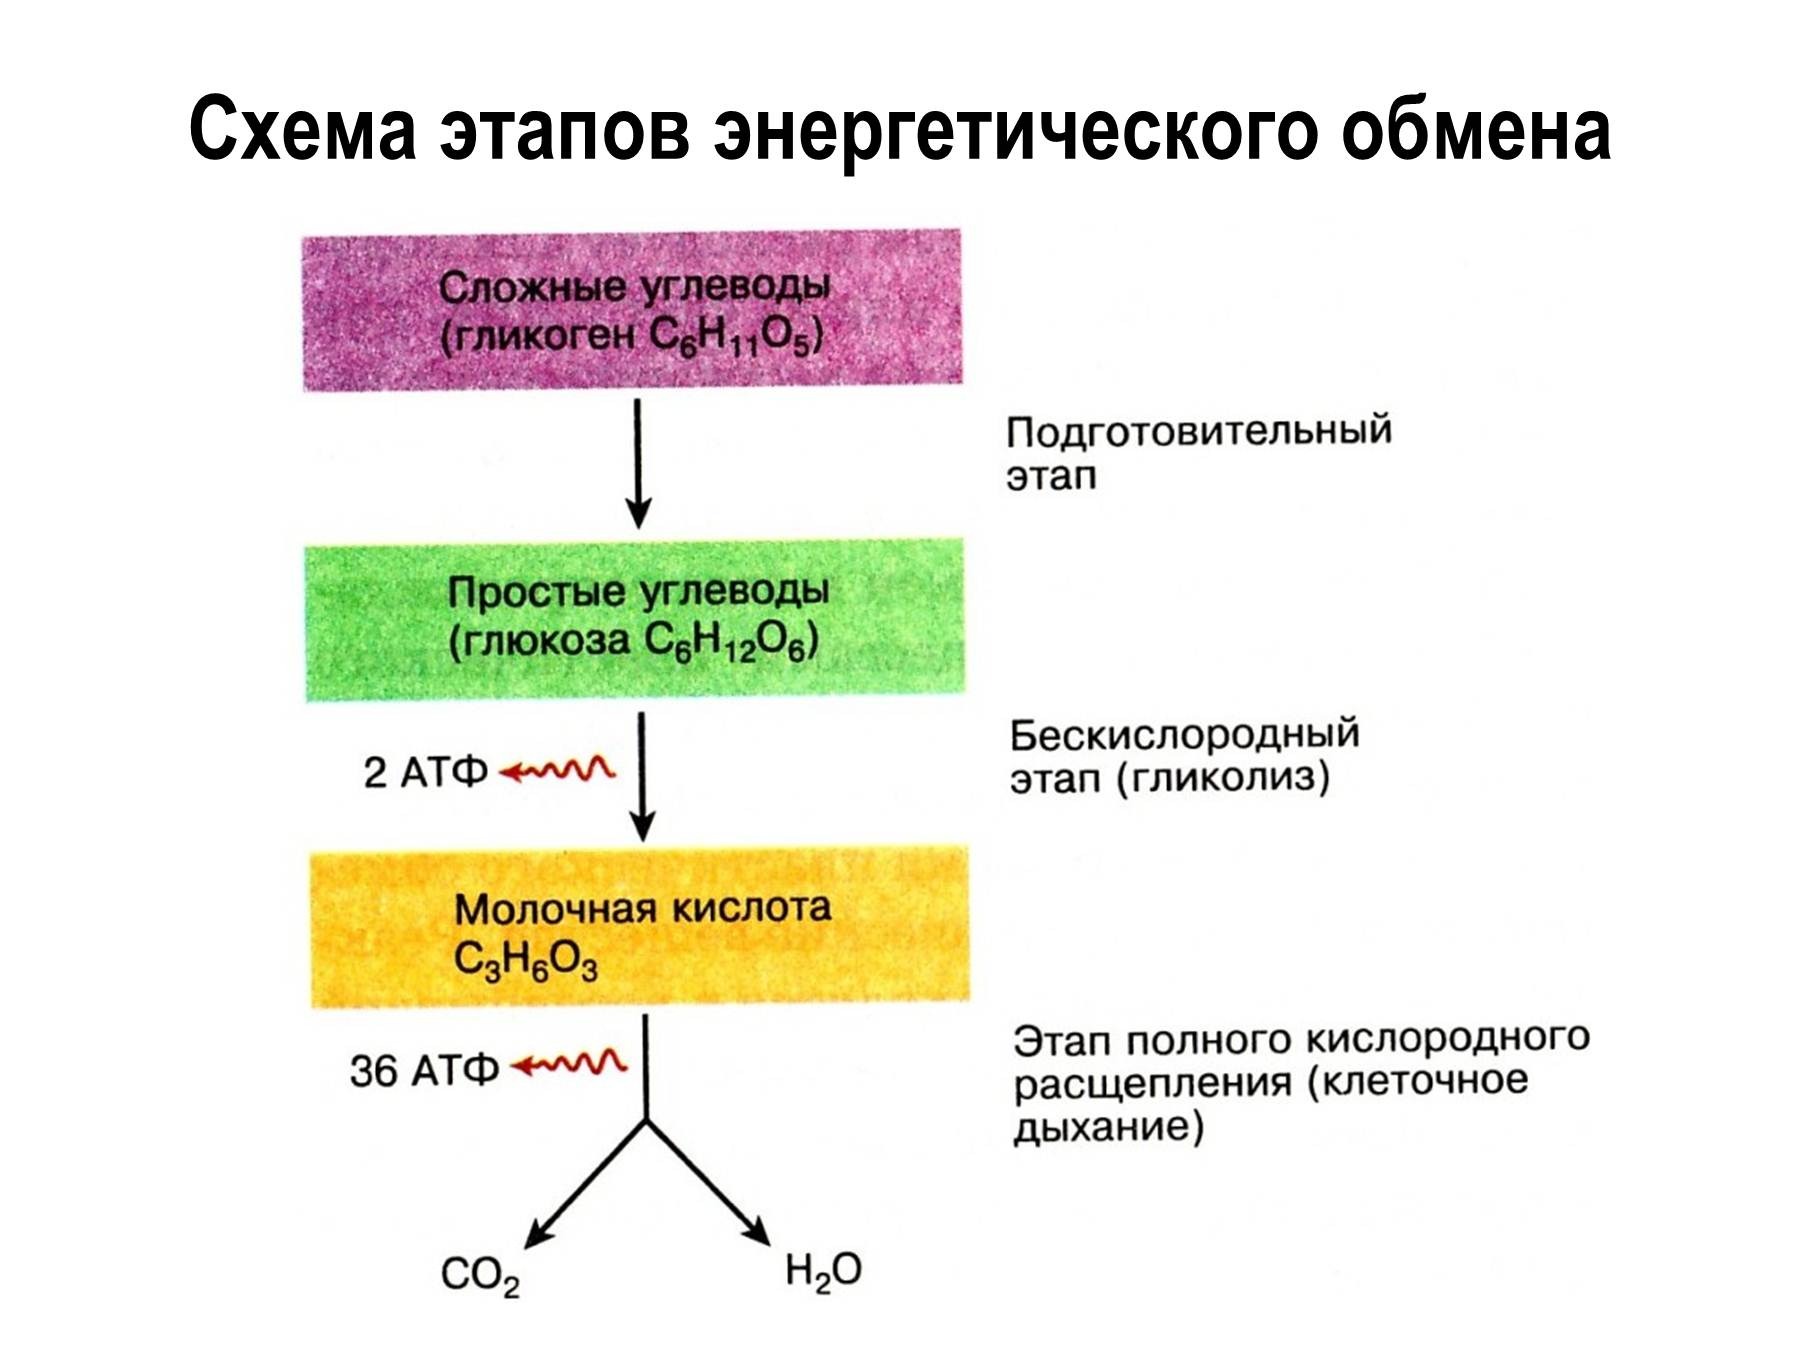 Получение атф. Этапы энергия обмена веществ схема. Охарактеризуйте этапы энергетического обмена..